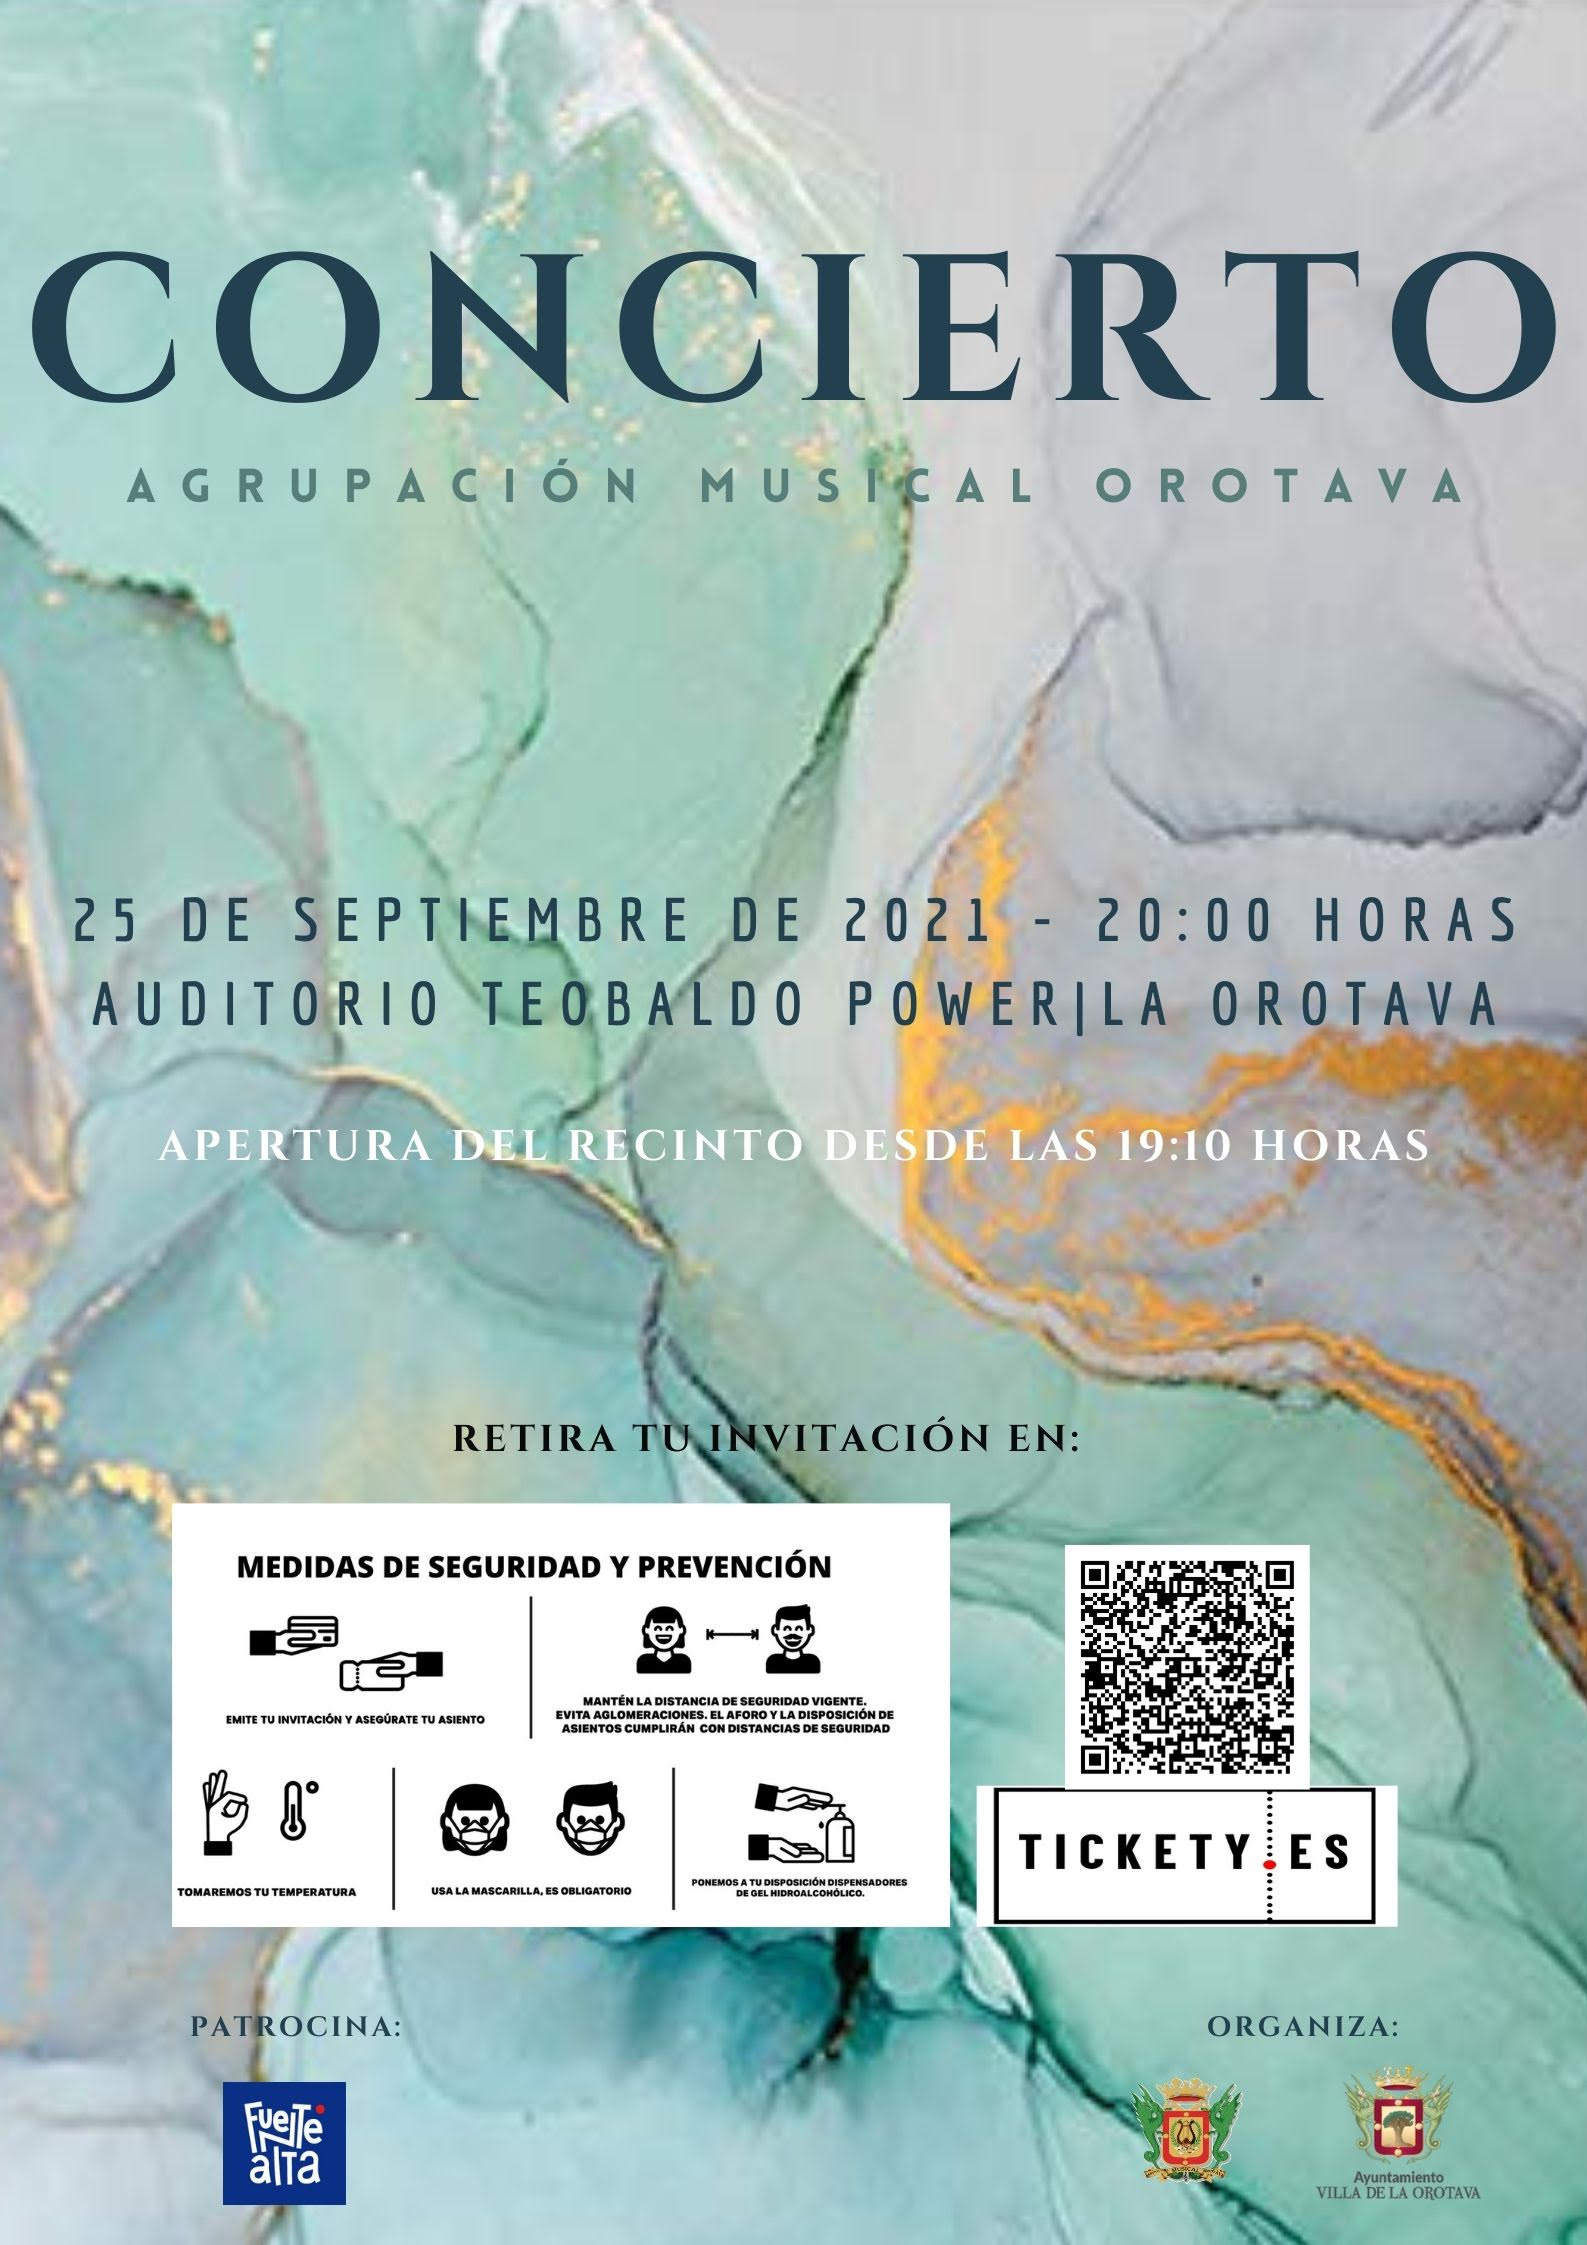 El concierto tendrá lugar el próximo 25 de septiembre, a partir de las 20:00 horas, en el Auditorio Teobaldo Power